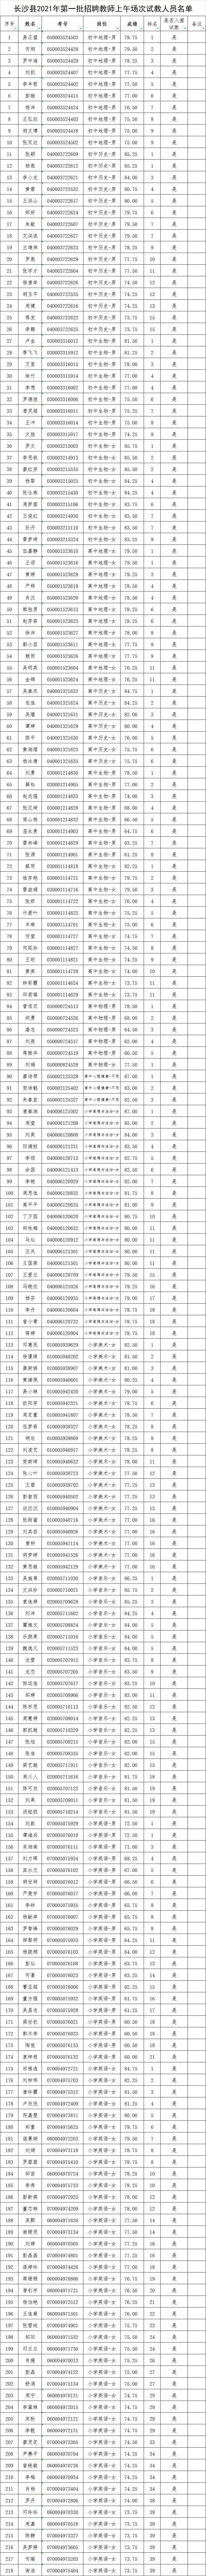 长沙县2021年第一批次教师招聘试教（专业技能测试）通知(图7)